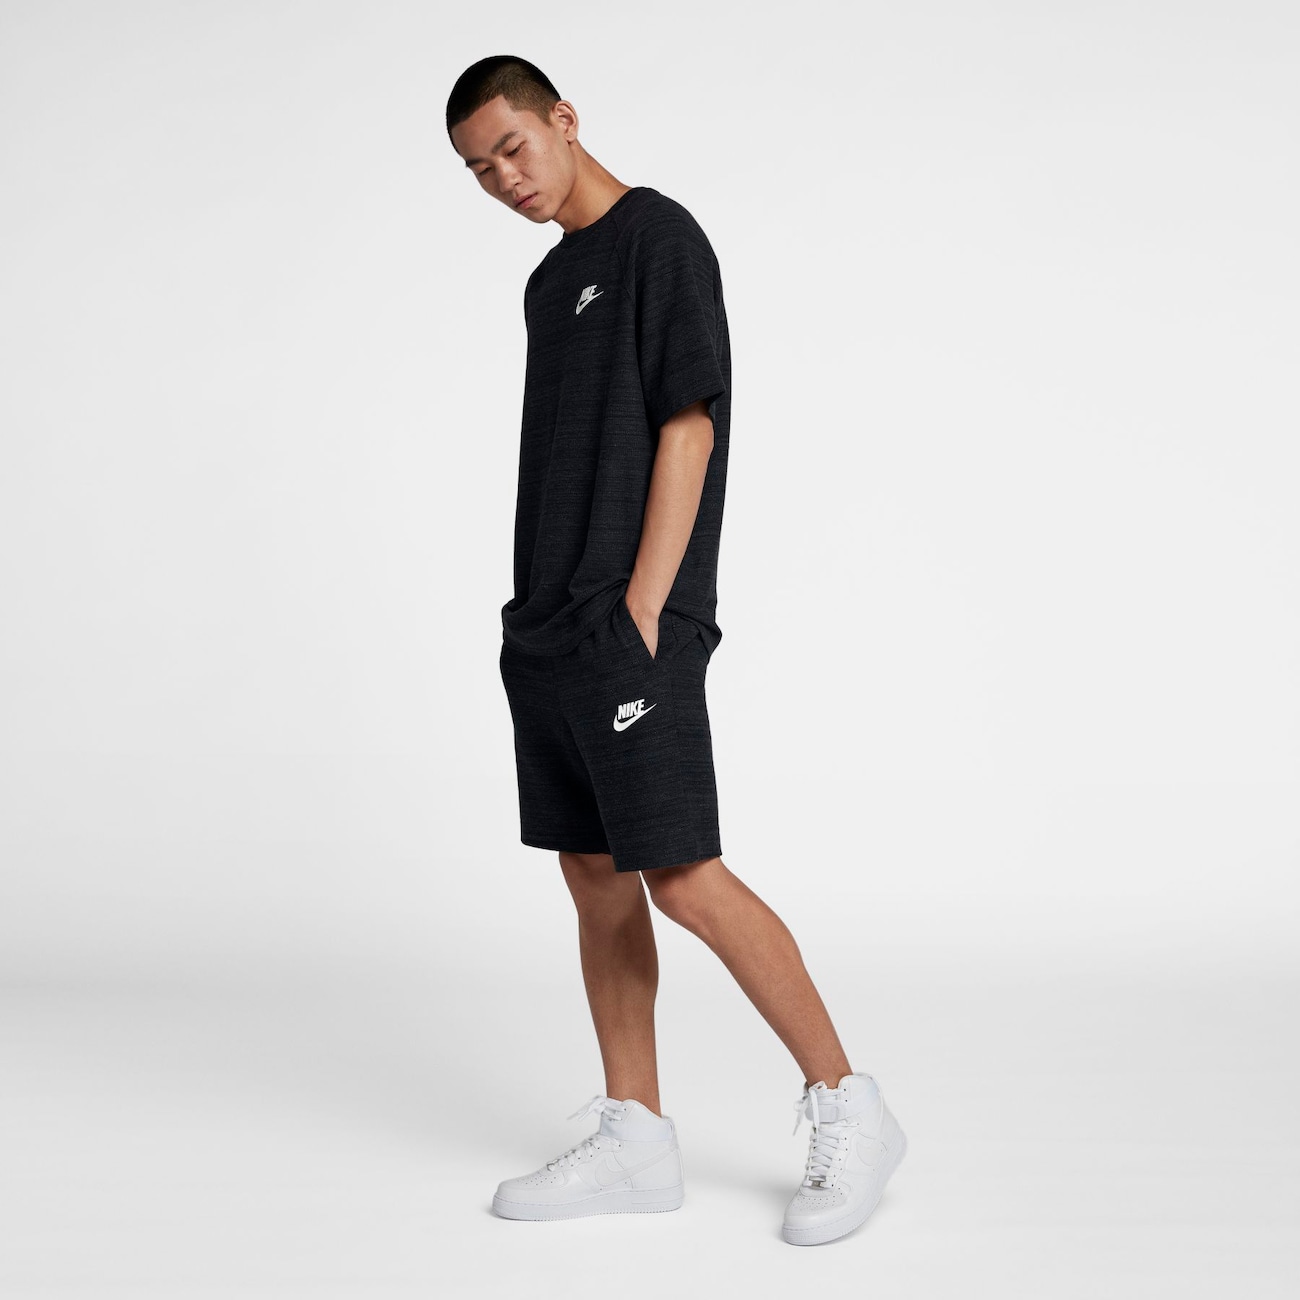 Shorts Nike Sportswear Advance 15 Masculino - Foto 2